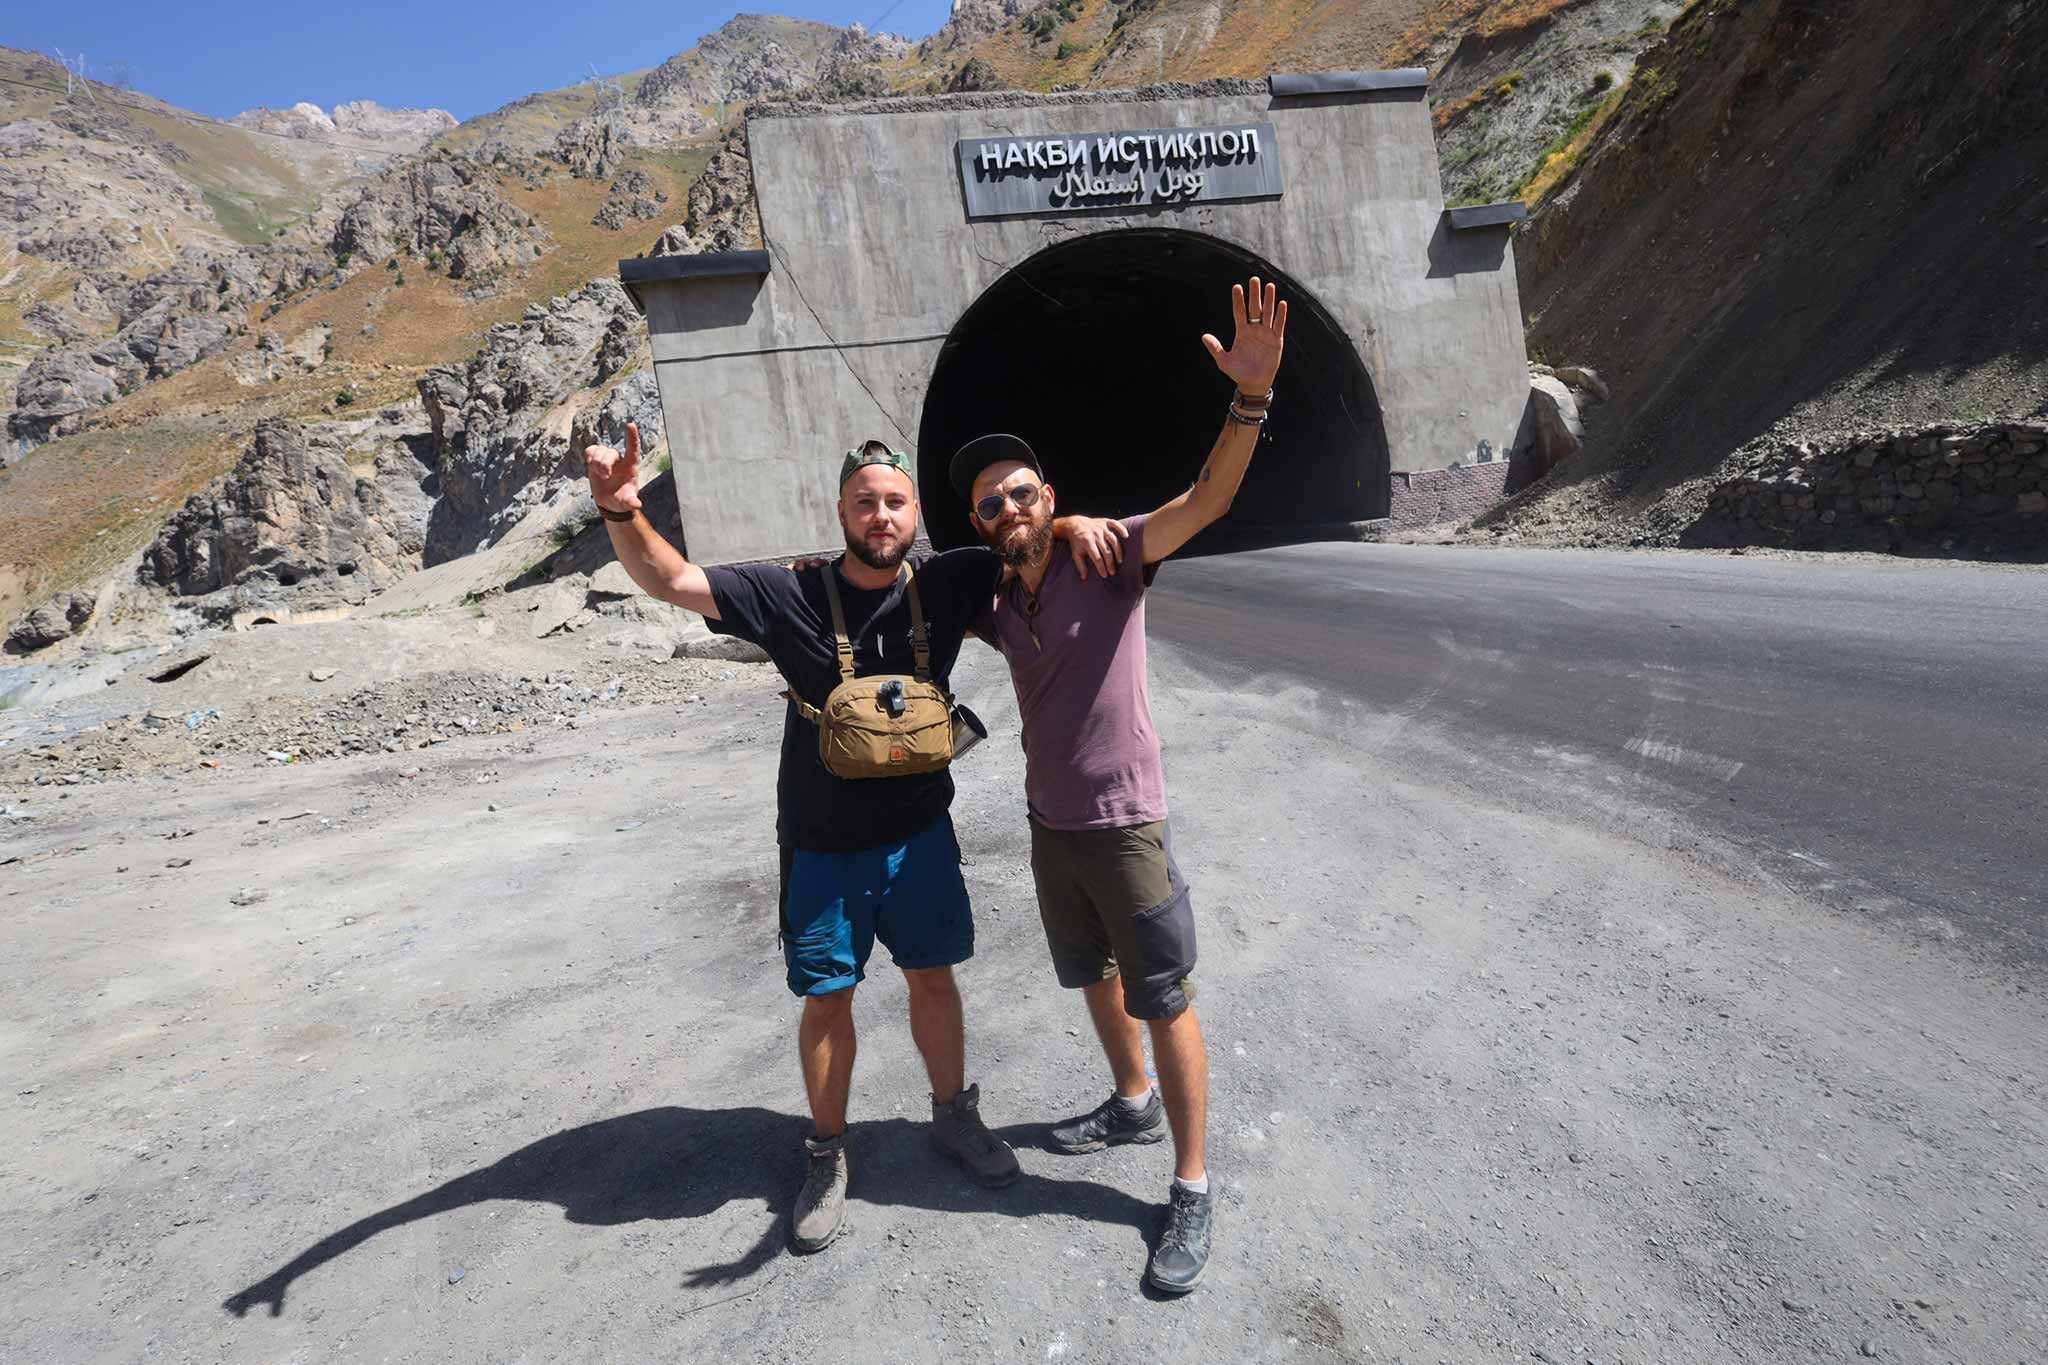 Tunel śmierci w Tadżykistanie | Anzob Tunel